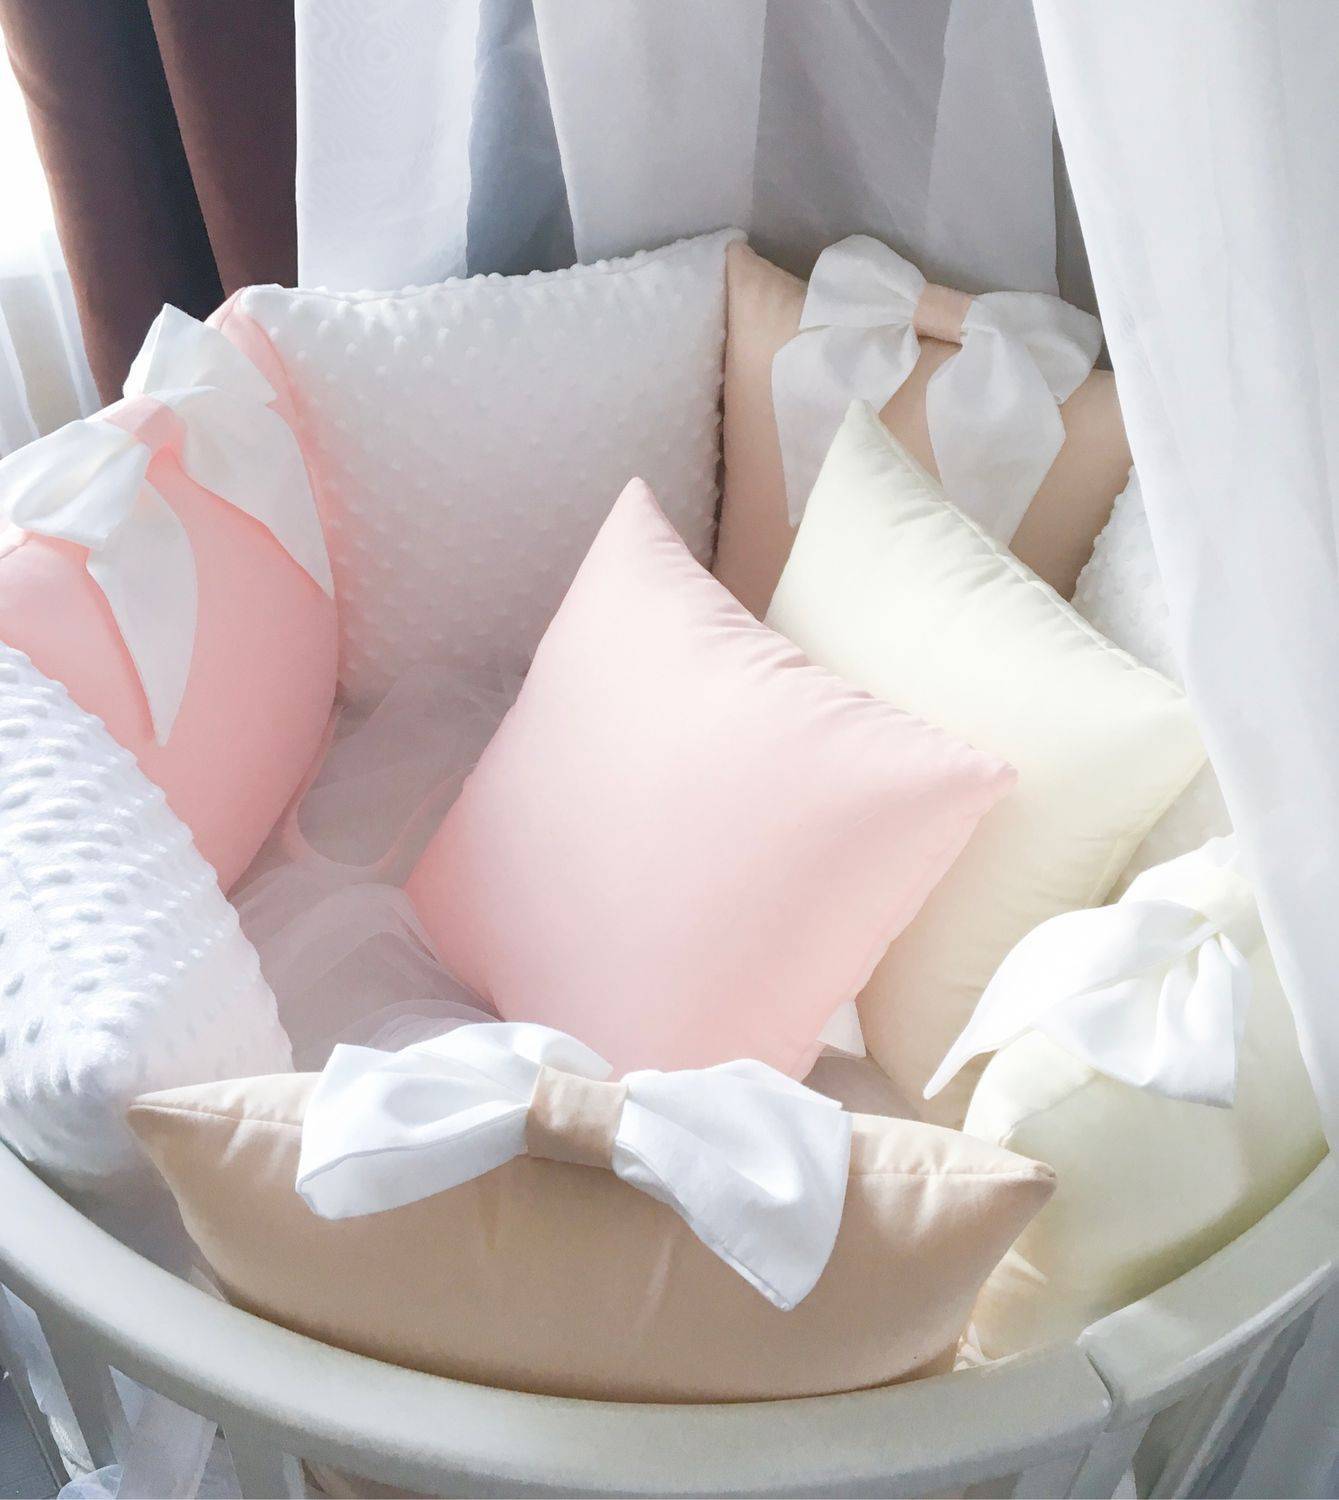 Бортики в кроватку для новорождённых своими руками: советы и инструкция